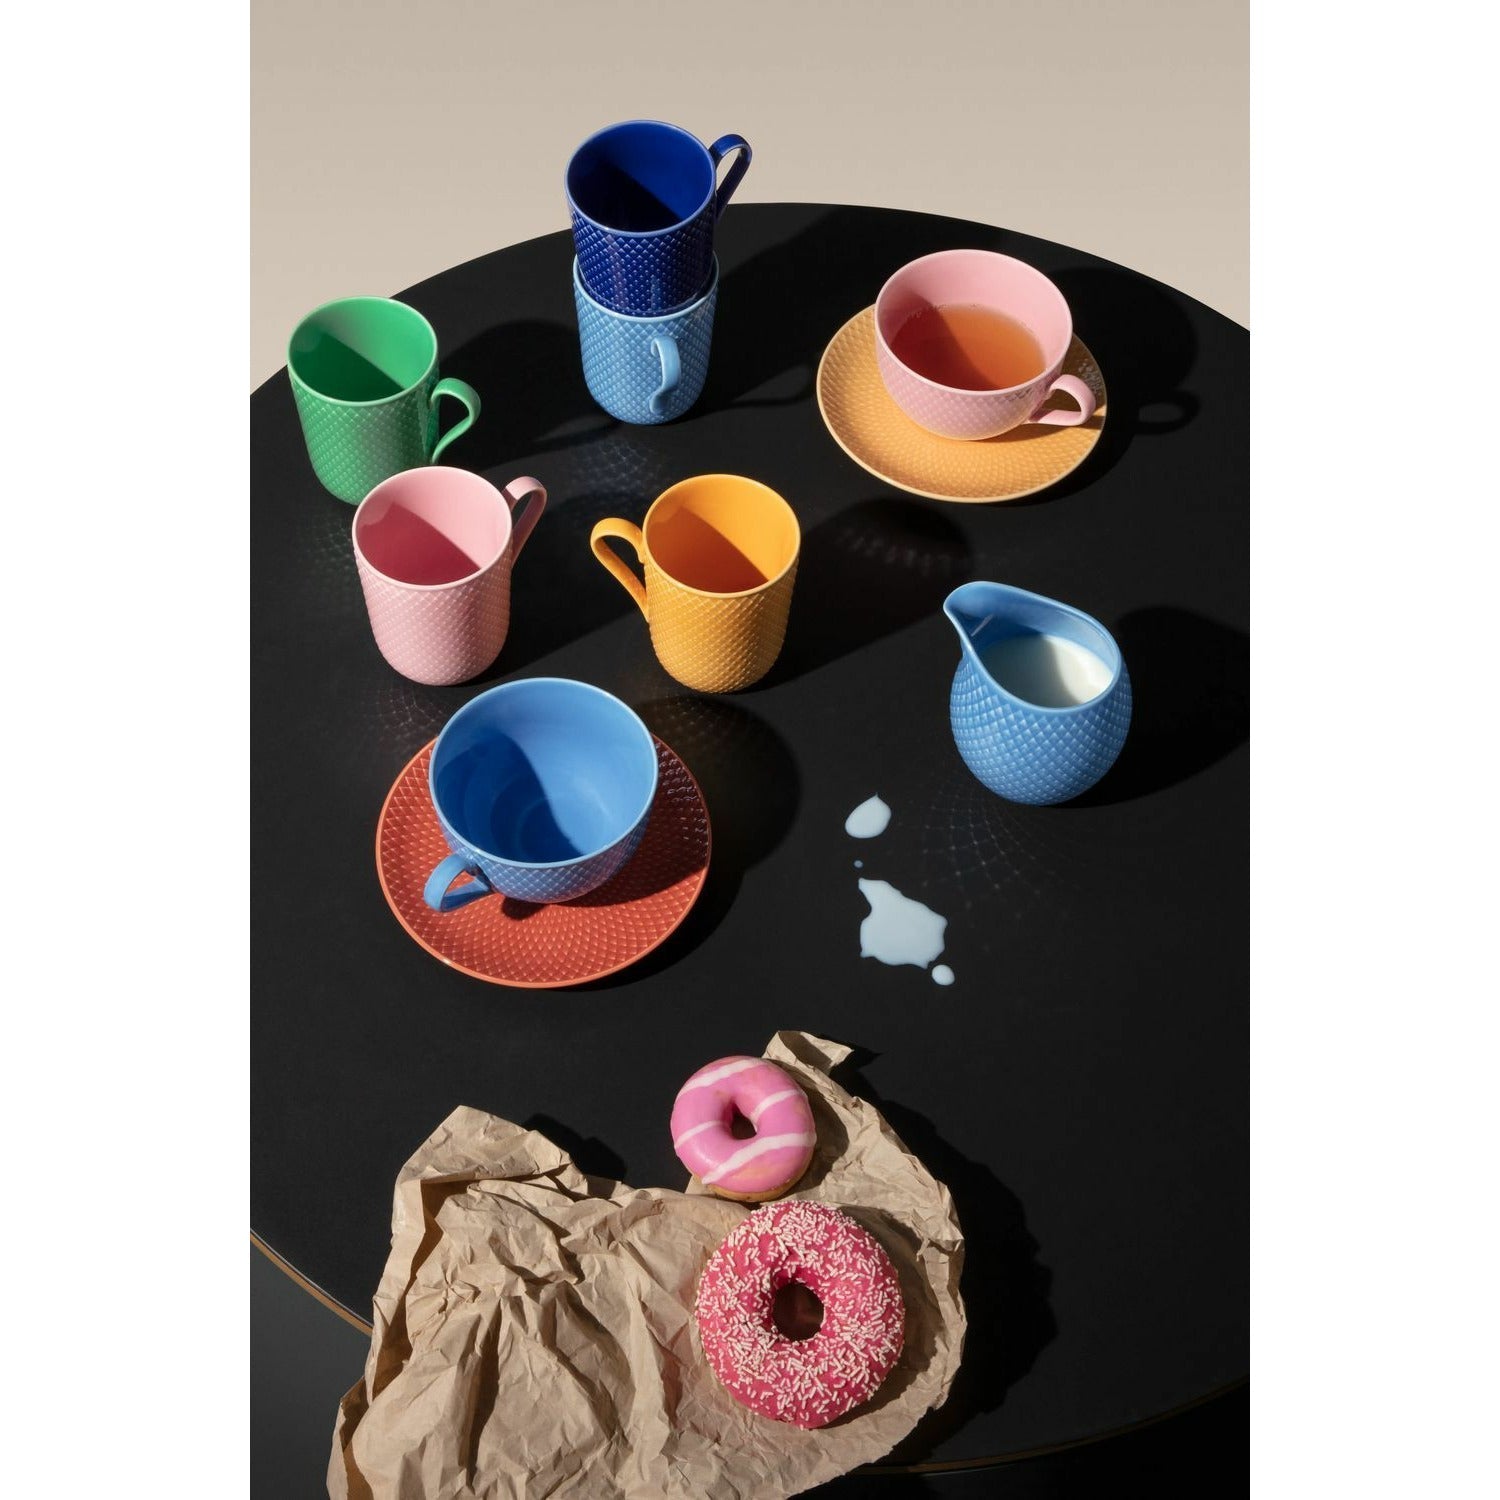 Lyngby Porcelæn Rhombe Color Tea tasse avec soucoupe, bleu / terre cuite